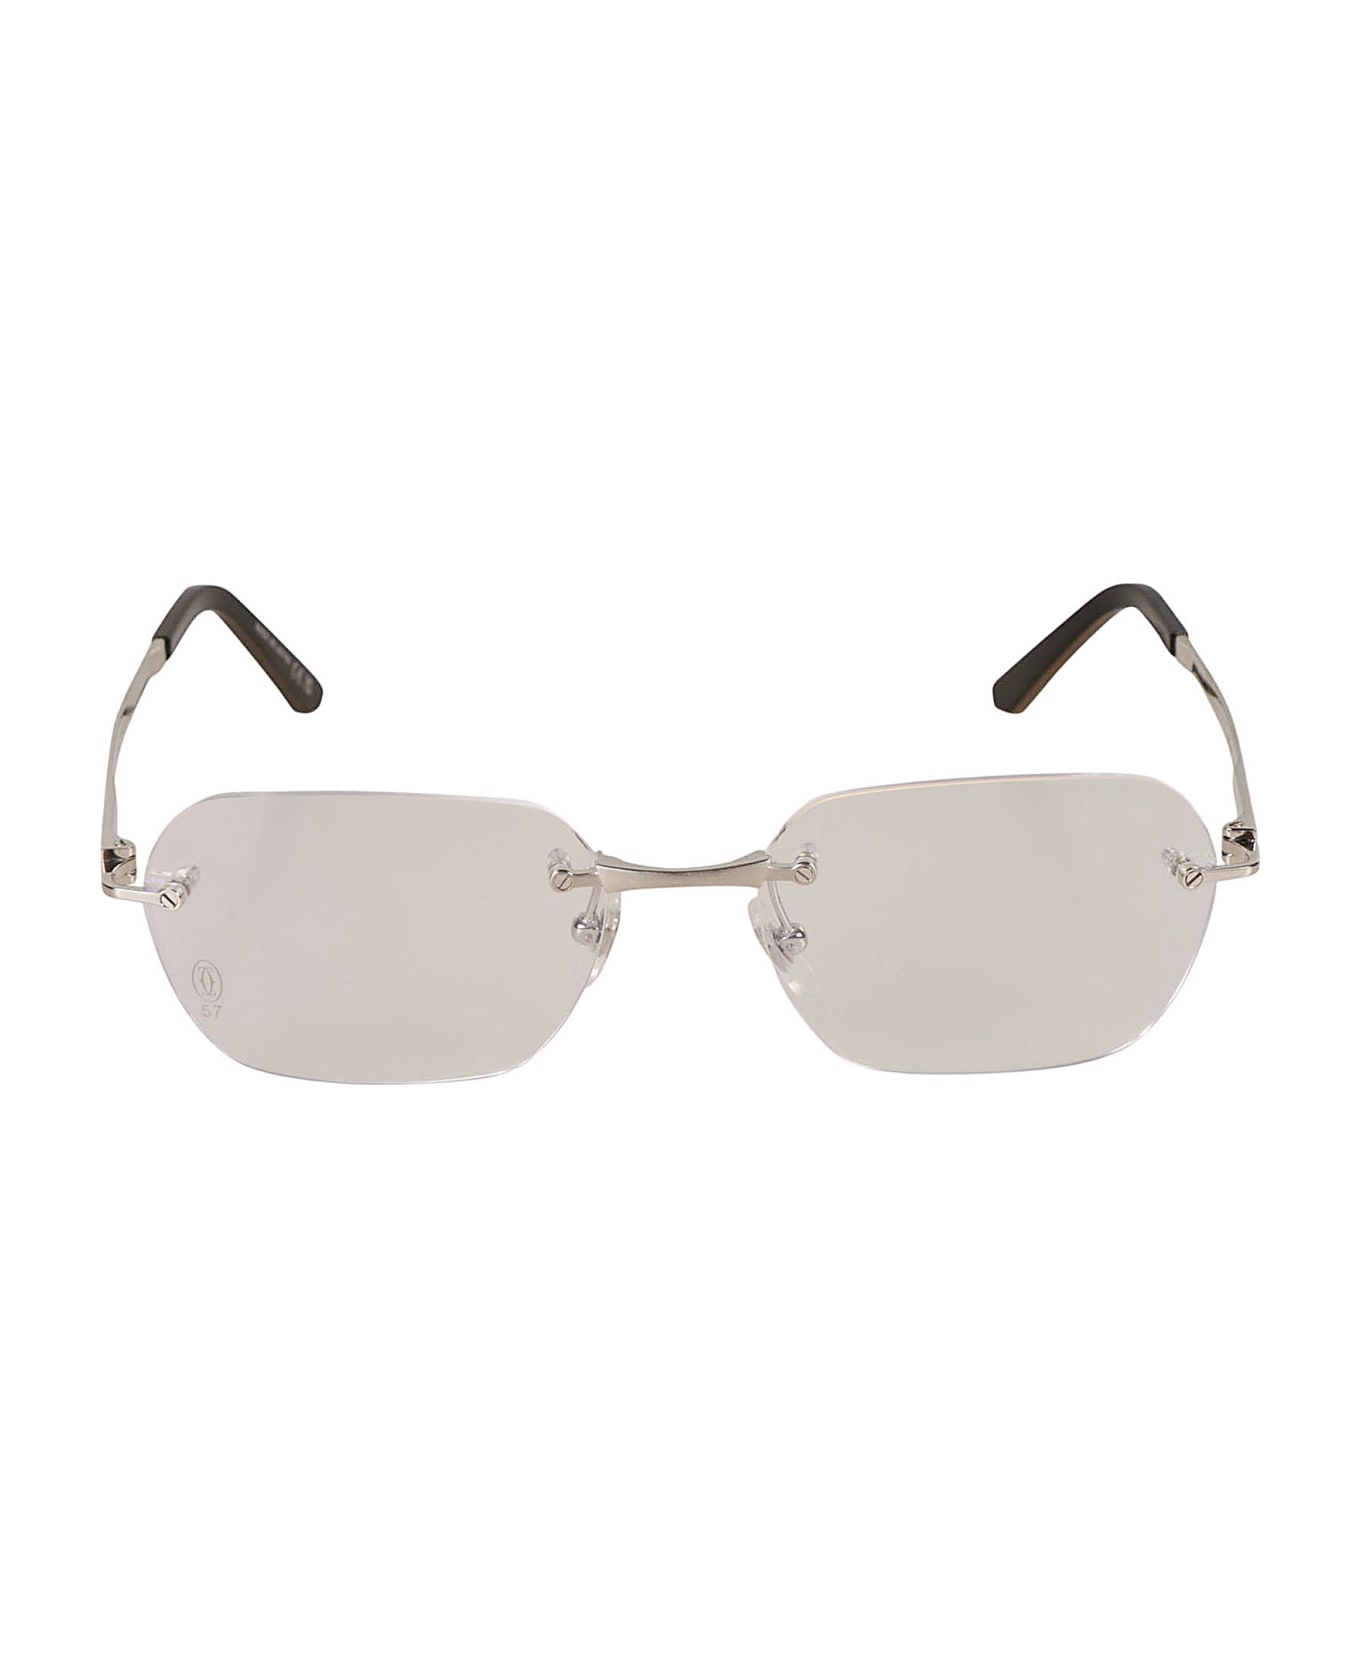 Cartier Eyewear Clear Classic Frameless Sunglasses Sunglasses - Silver